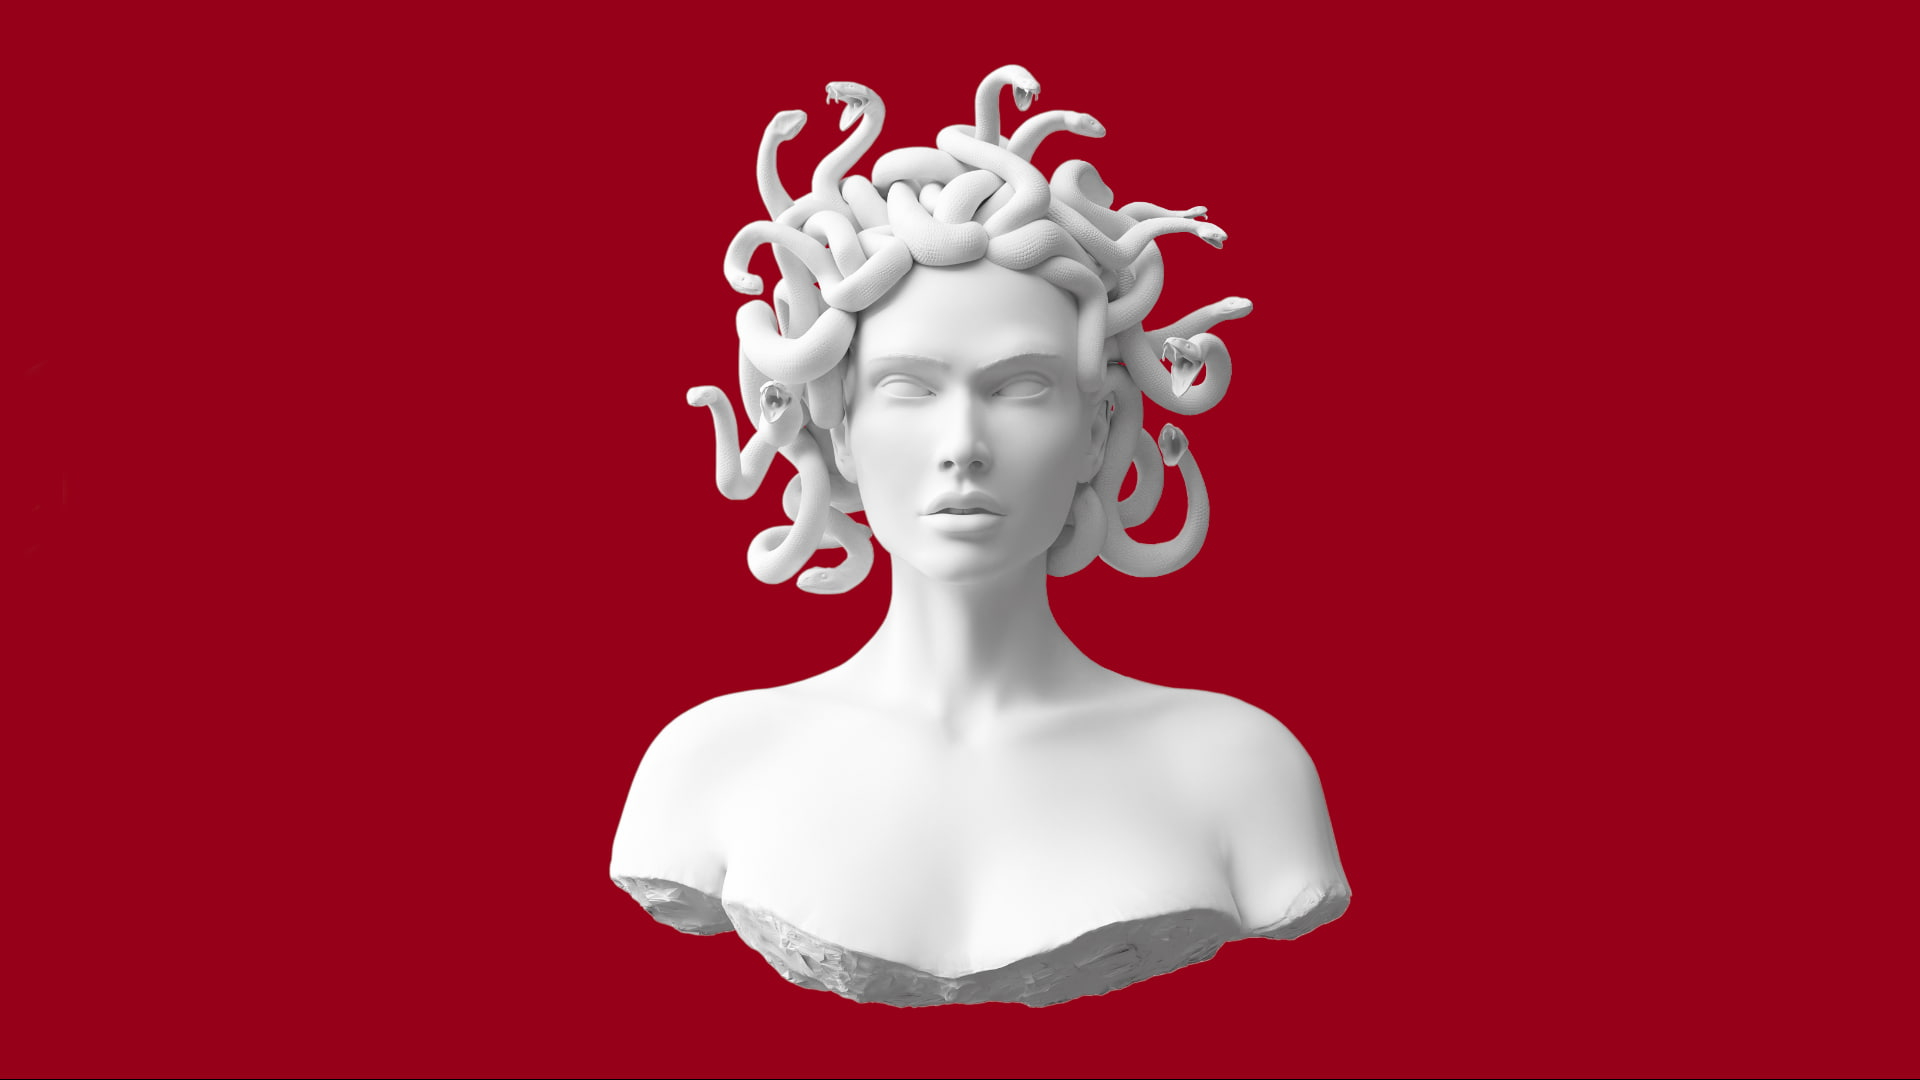 Wallpaper Bust Of Medusa, Red